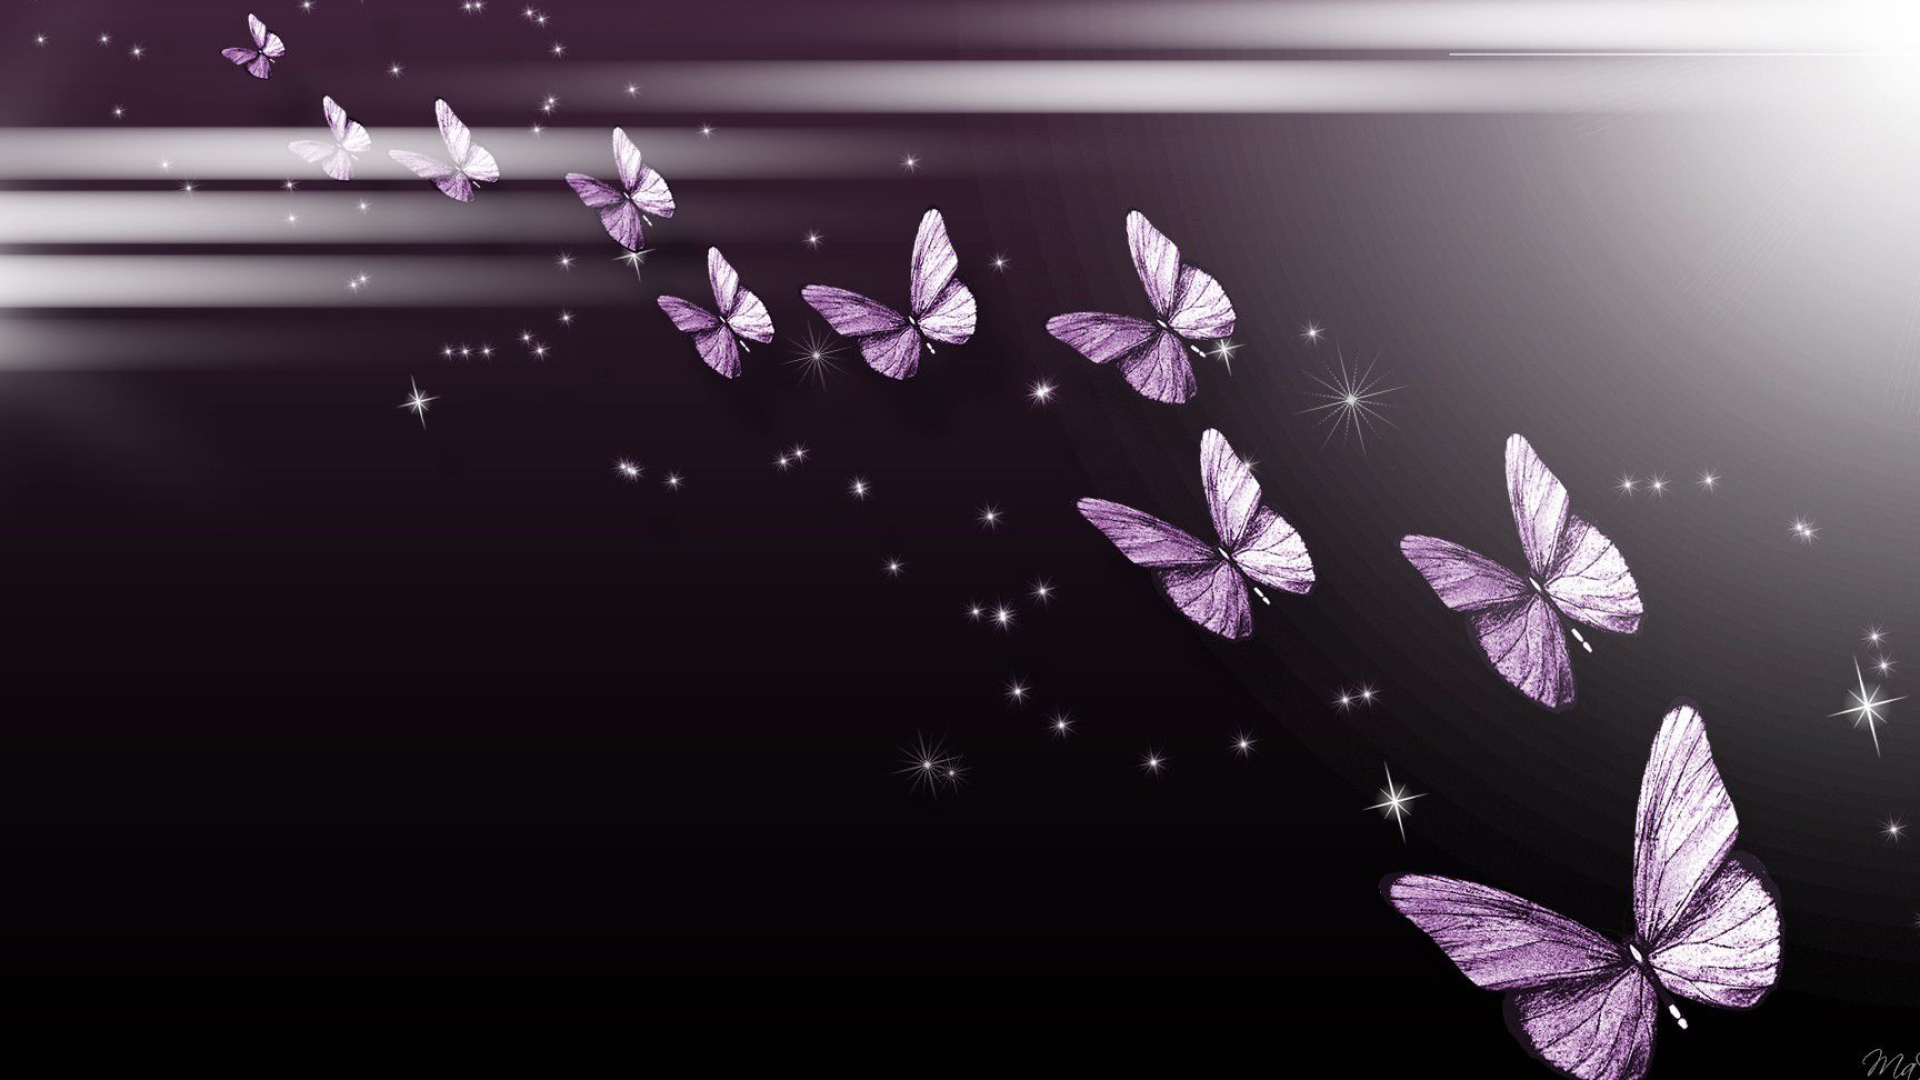 1920x1080 Purple Butterfly Wallpapers Hd ~ Monodomo | Butterfly wallpaper, Purple butterfly wallpaper, Wallpaper